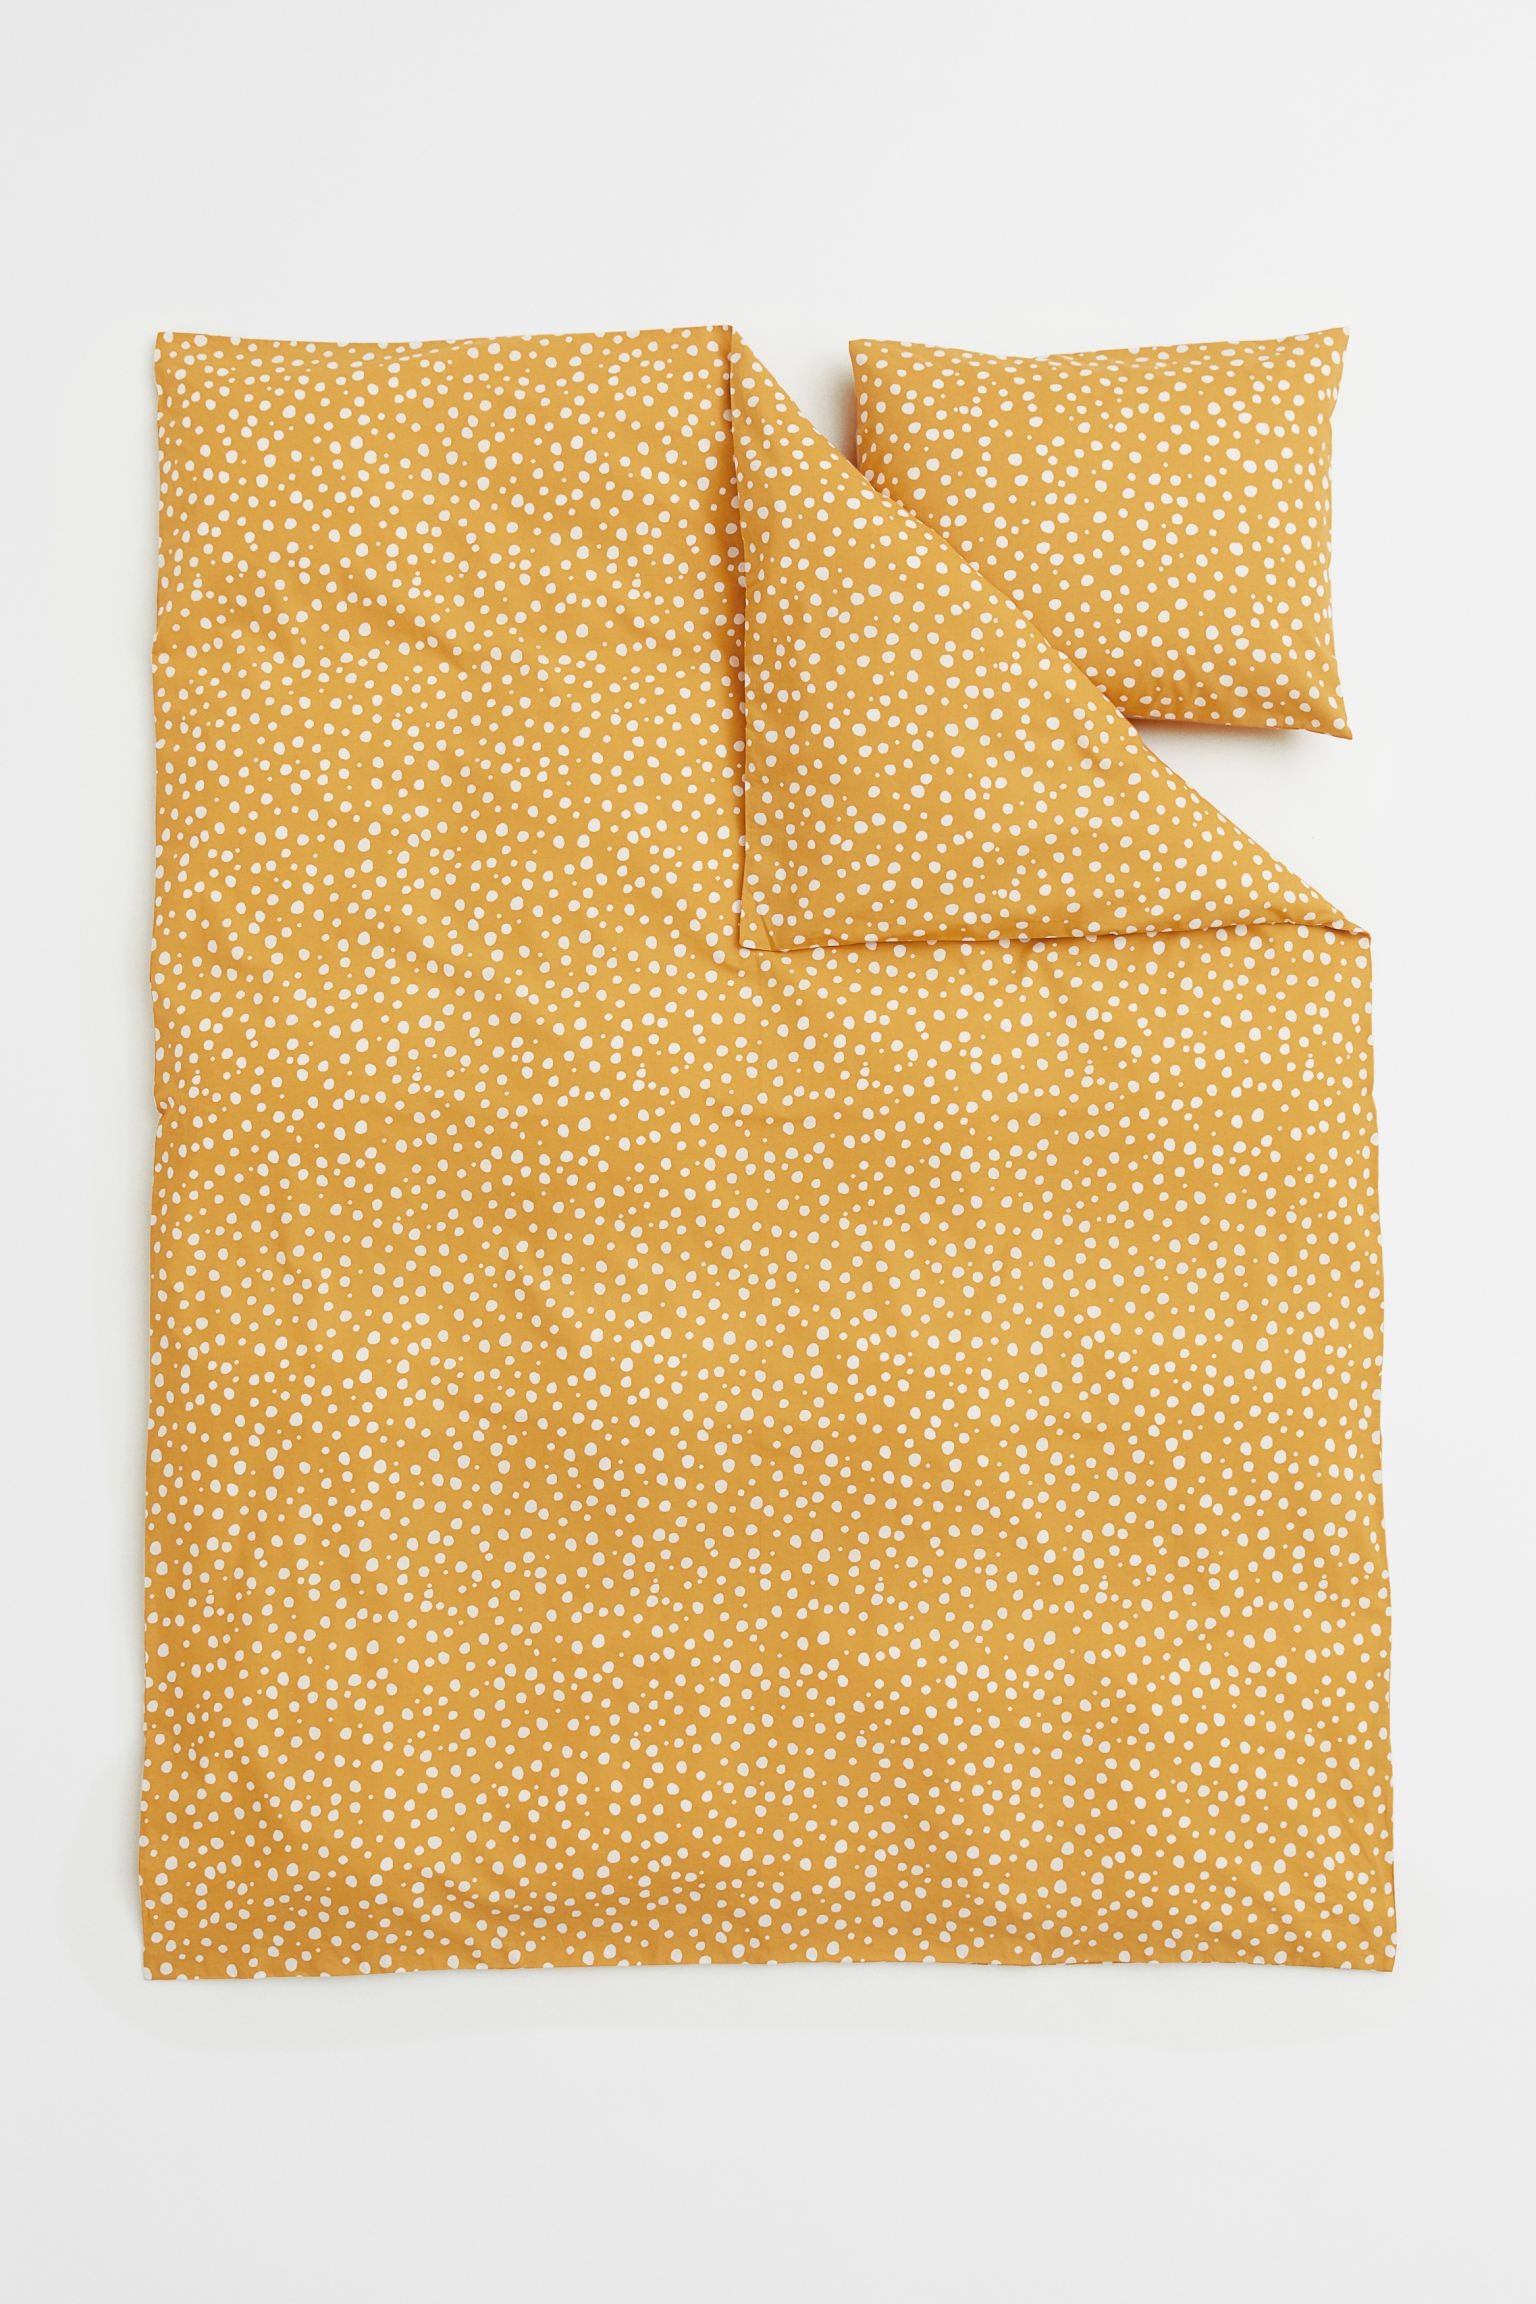 Односпальное постельное белье в узоры, Желтый/Точки, Разные размеры